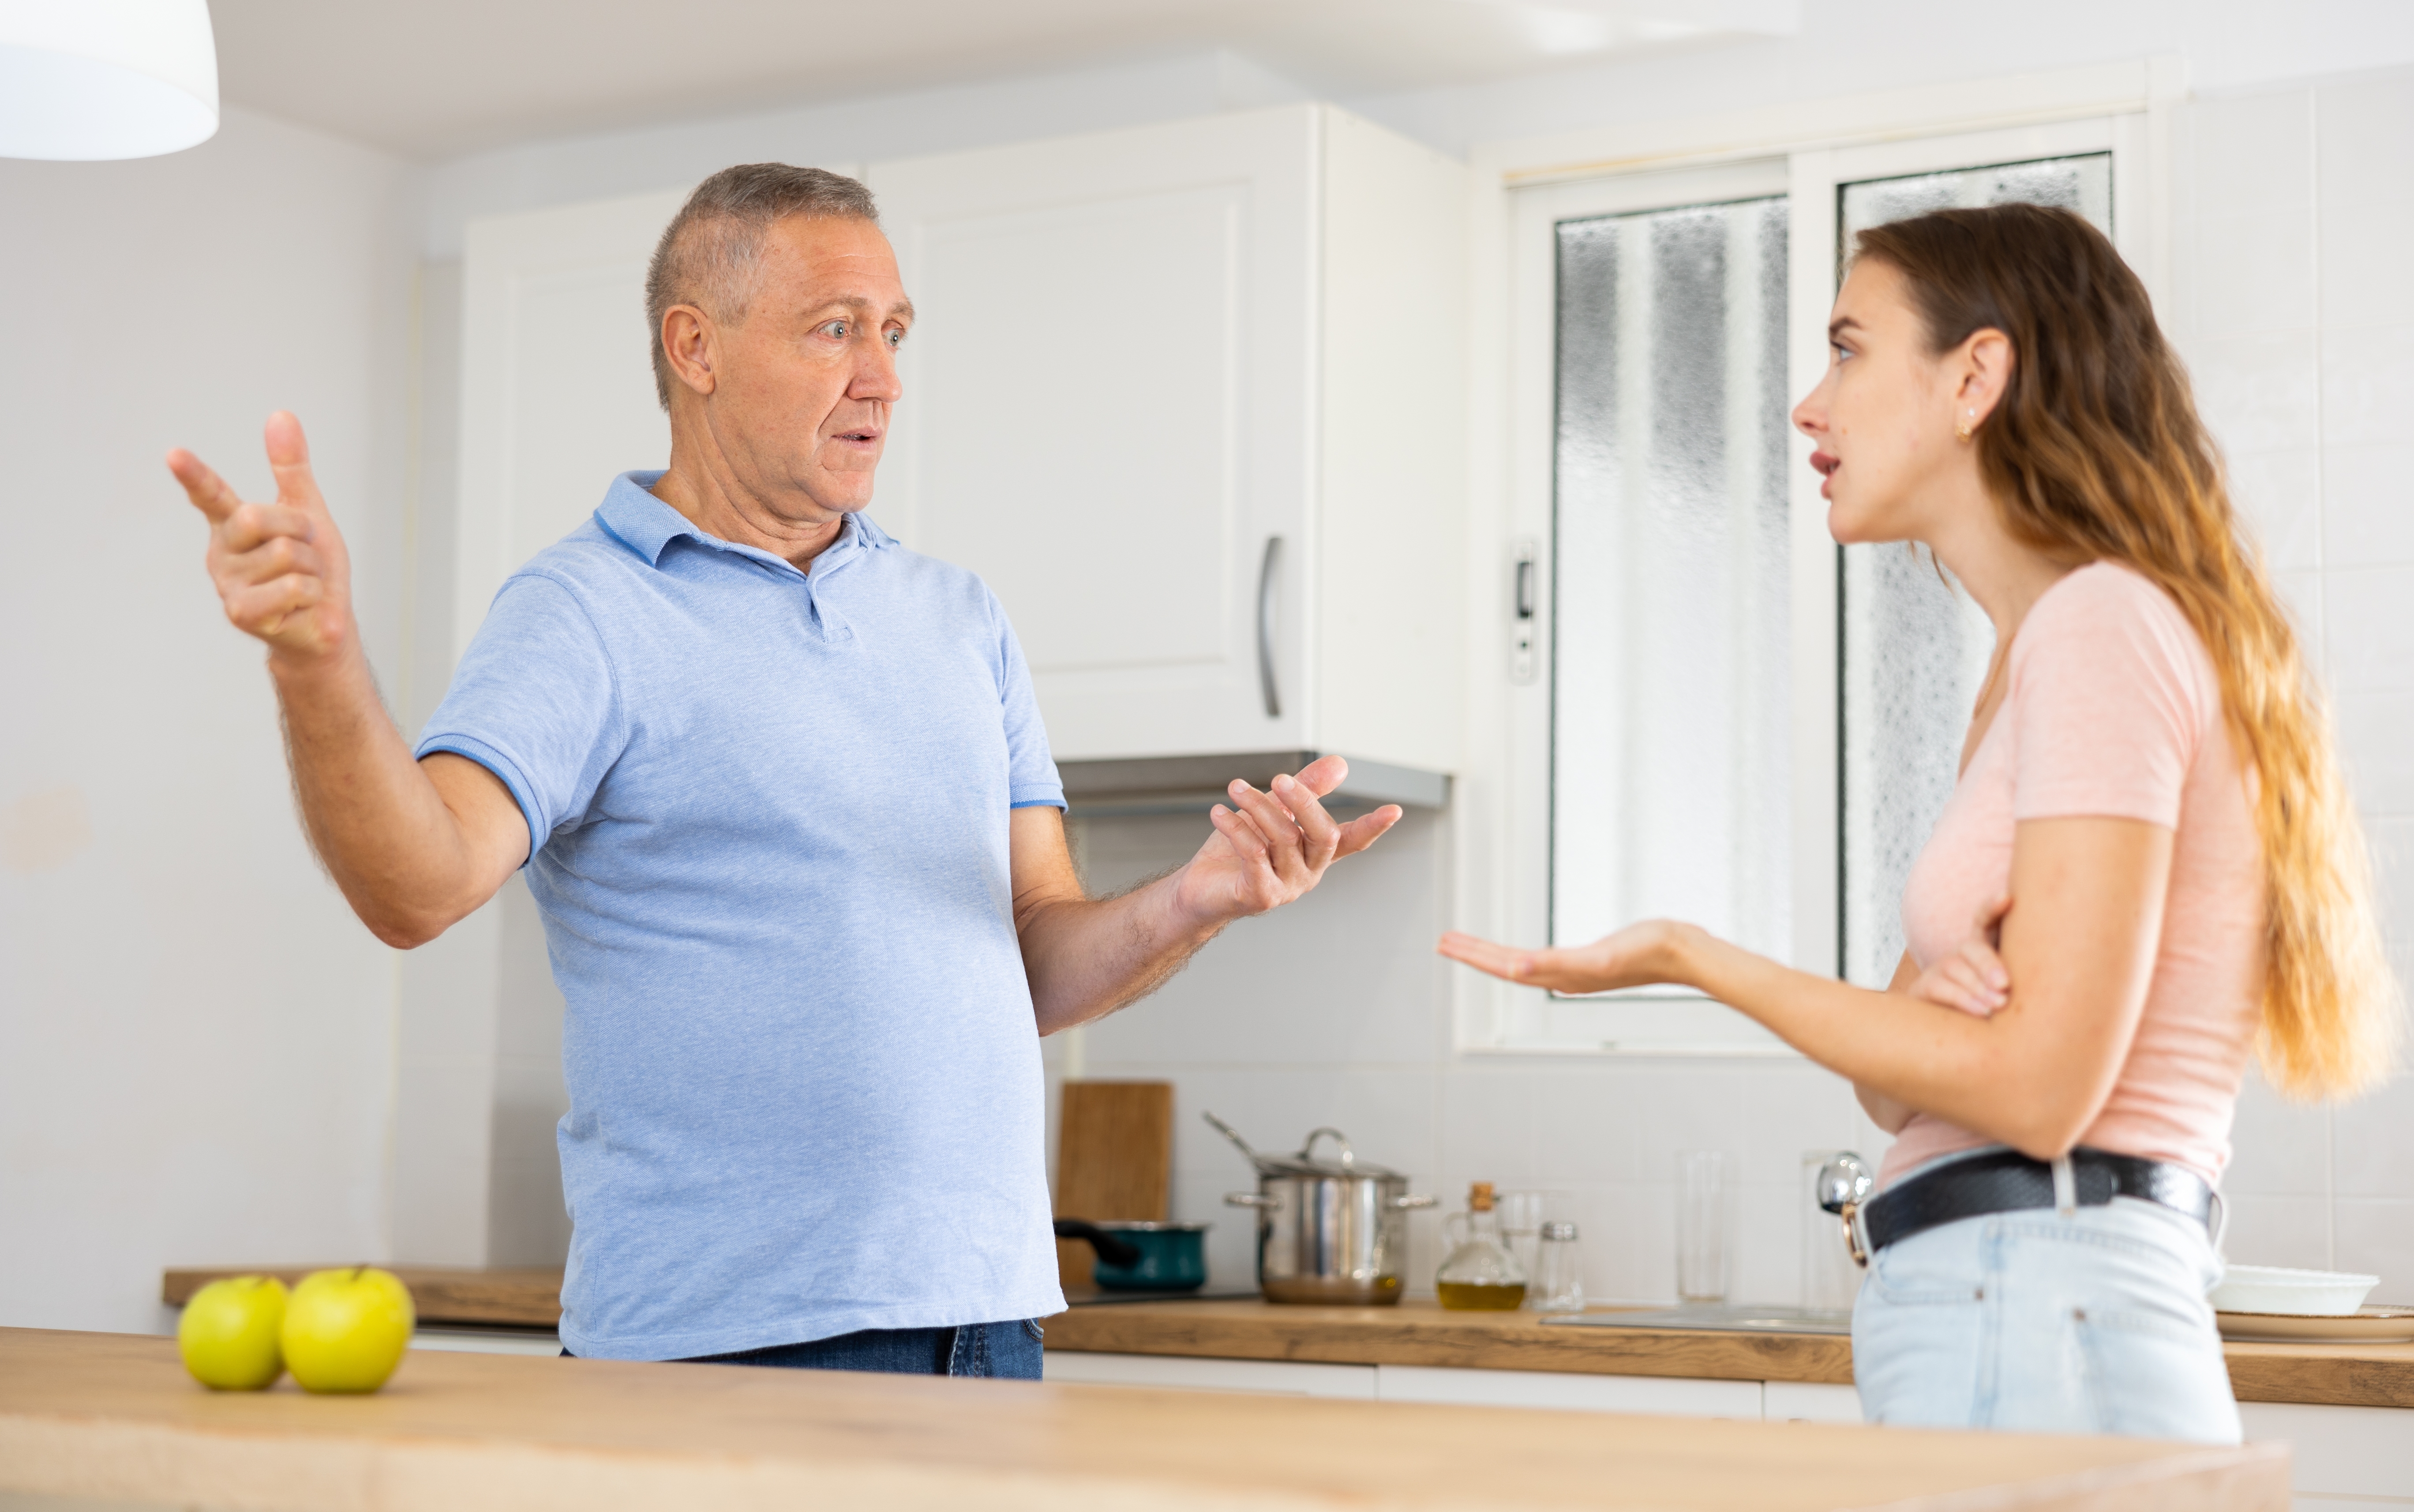 Un homme plus âgé et une femme plus jeune se disputent | Source : Shutterstock